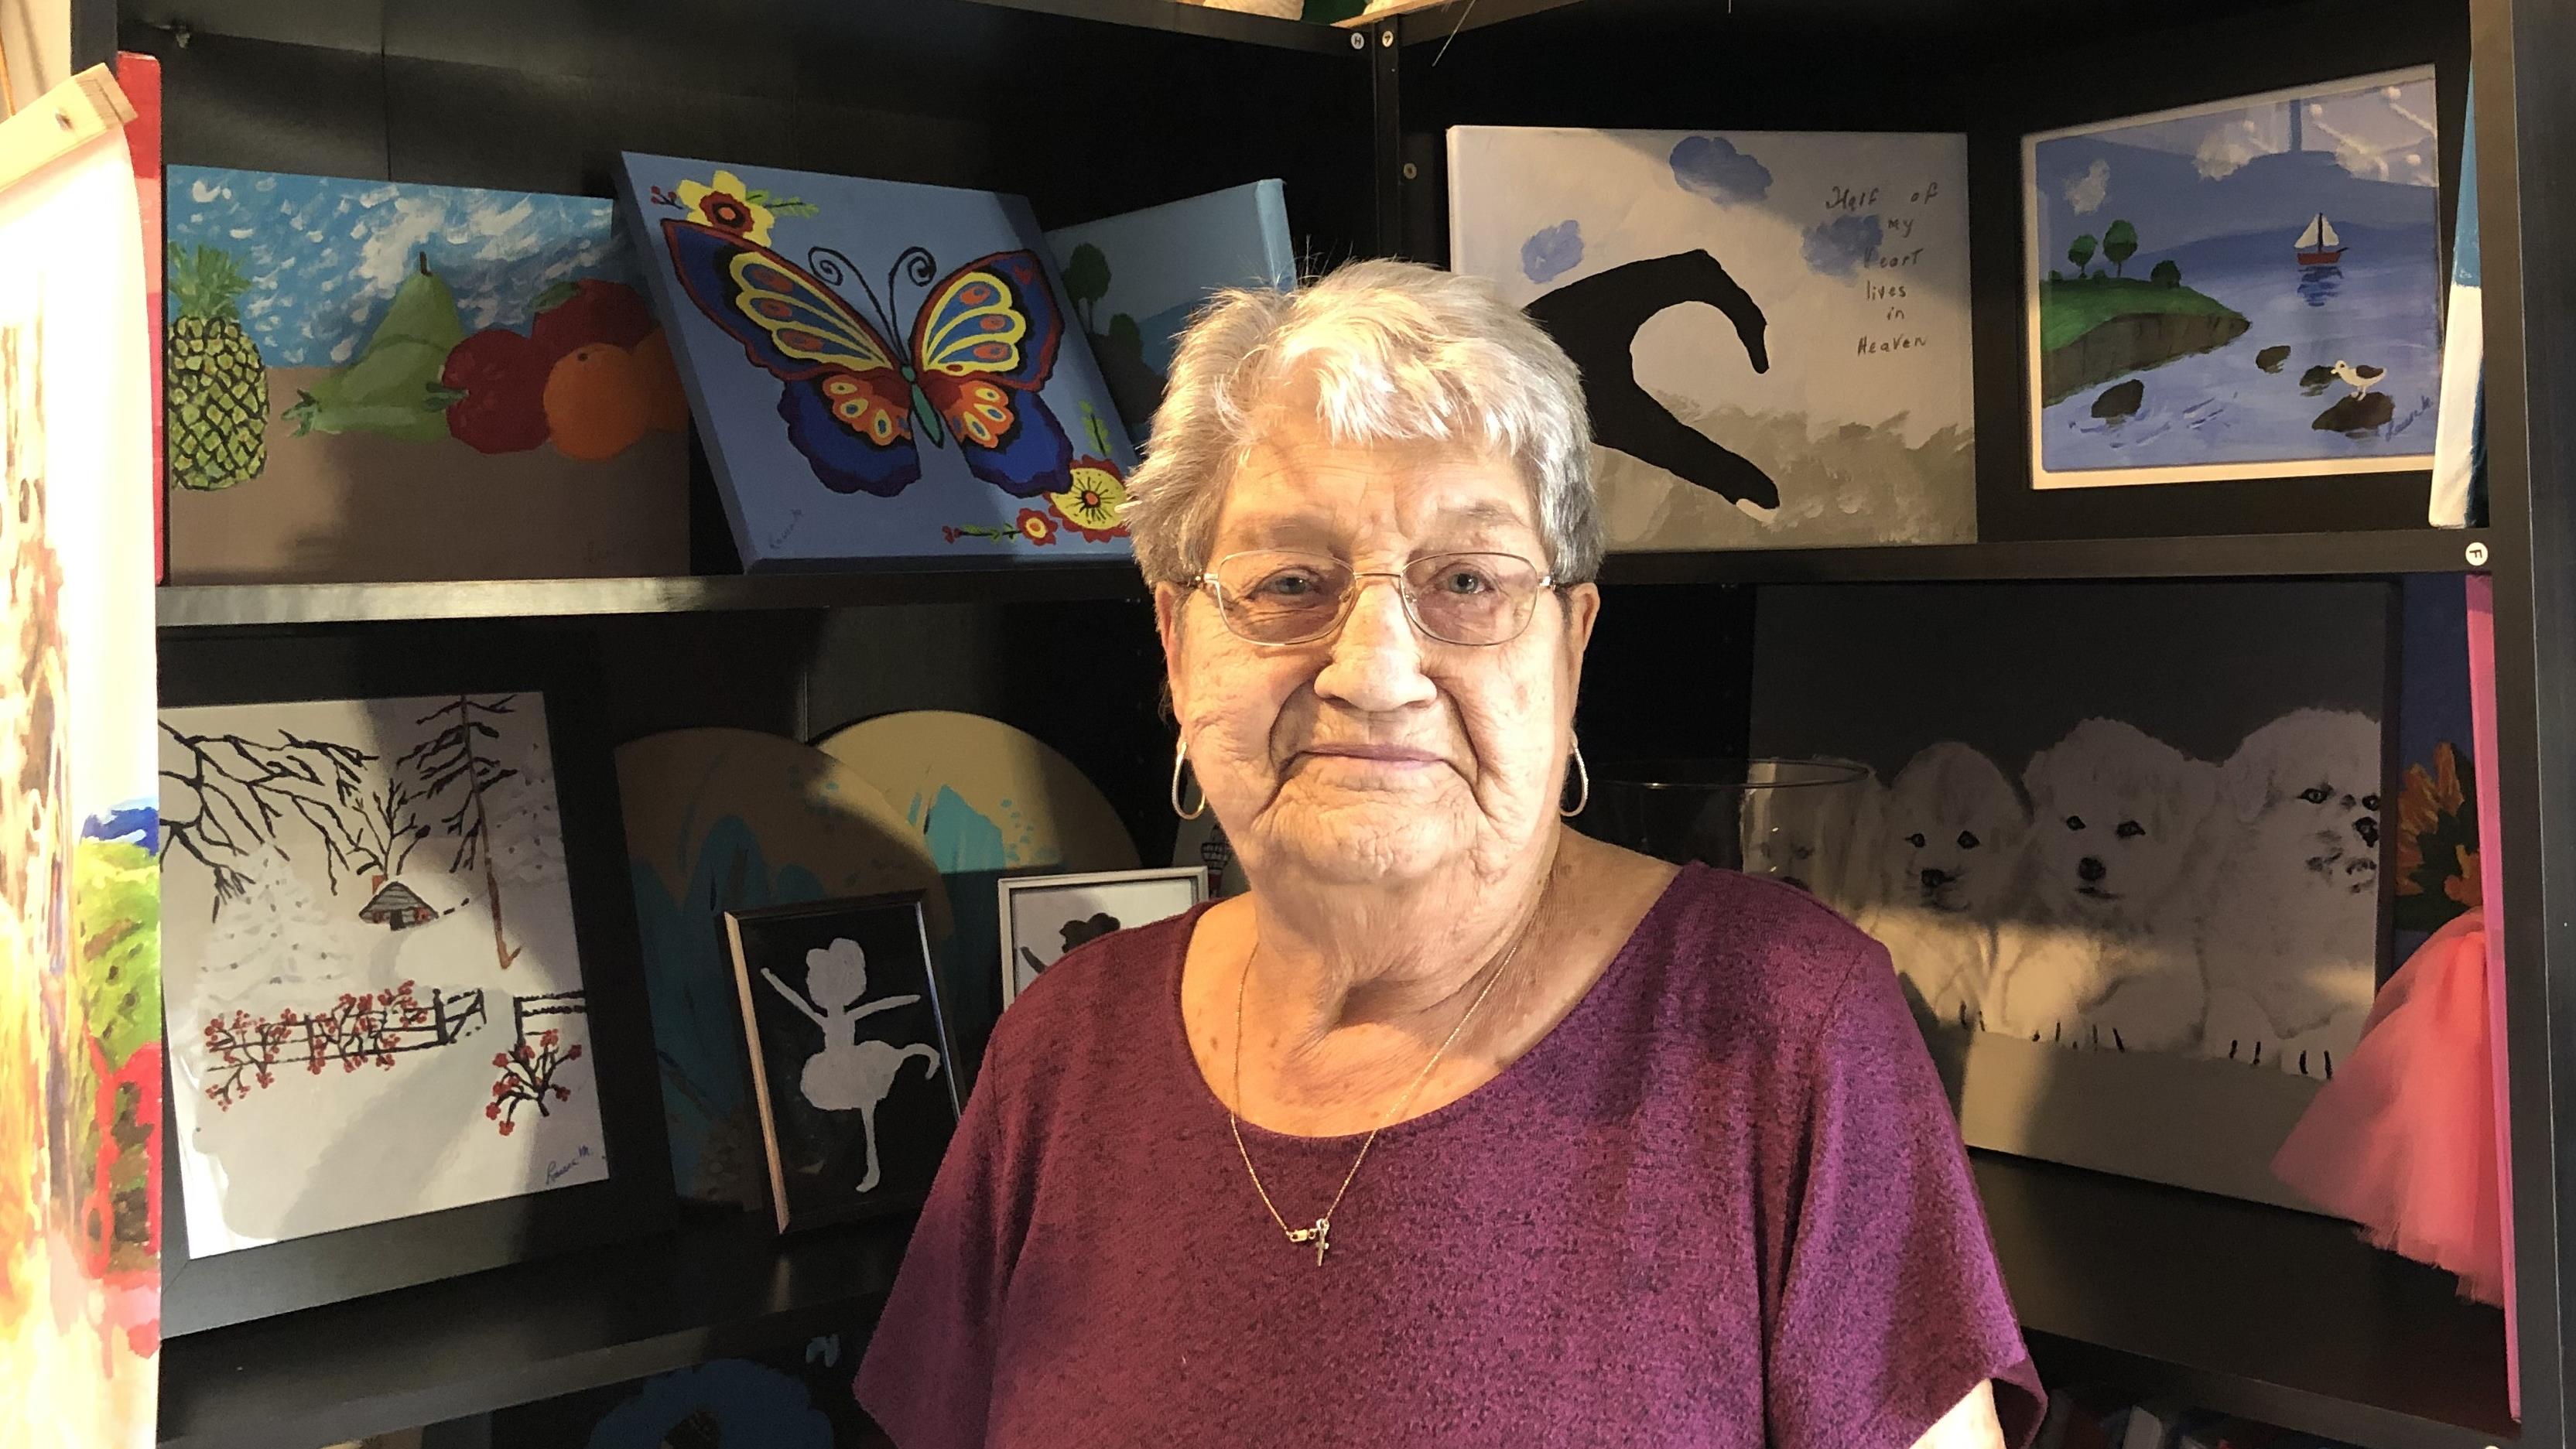 Laura Maillet s'évade dans son studio pour peindre depuis l'âge de 83
Laura Maillet s'évade dans son studio pour peindre depuis l'âge de 83